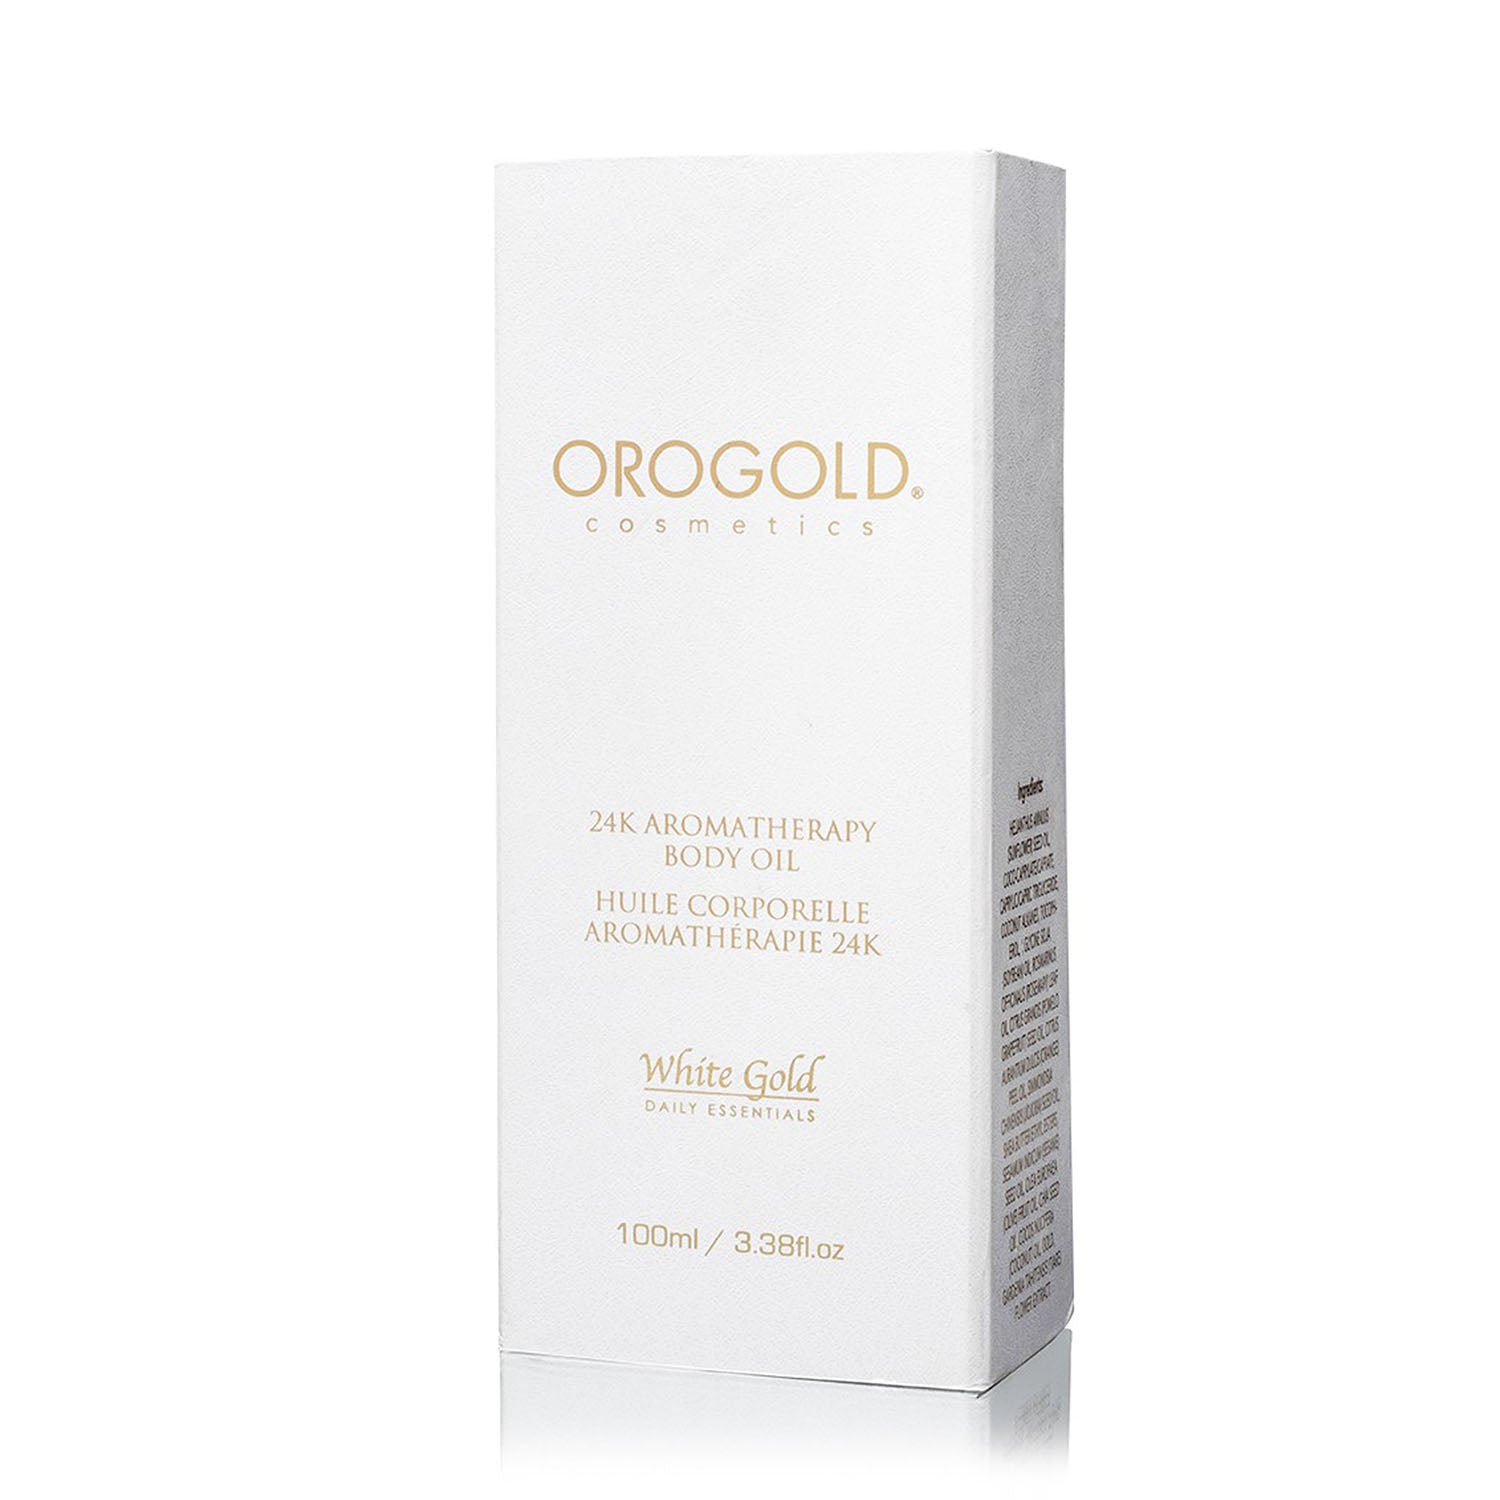 orogold white gold 24k aromatherapy body oil